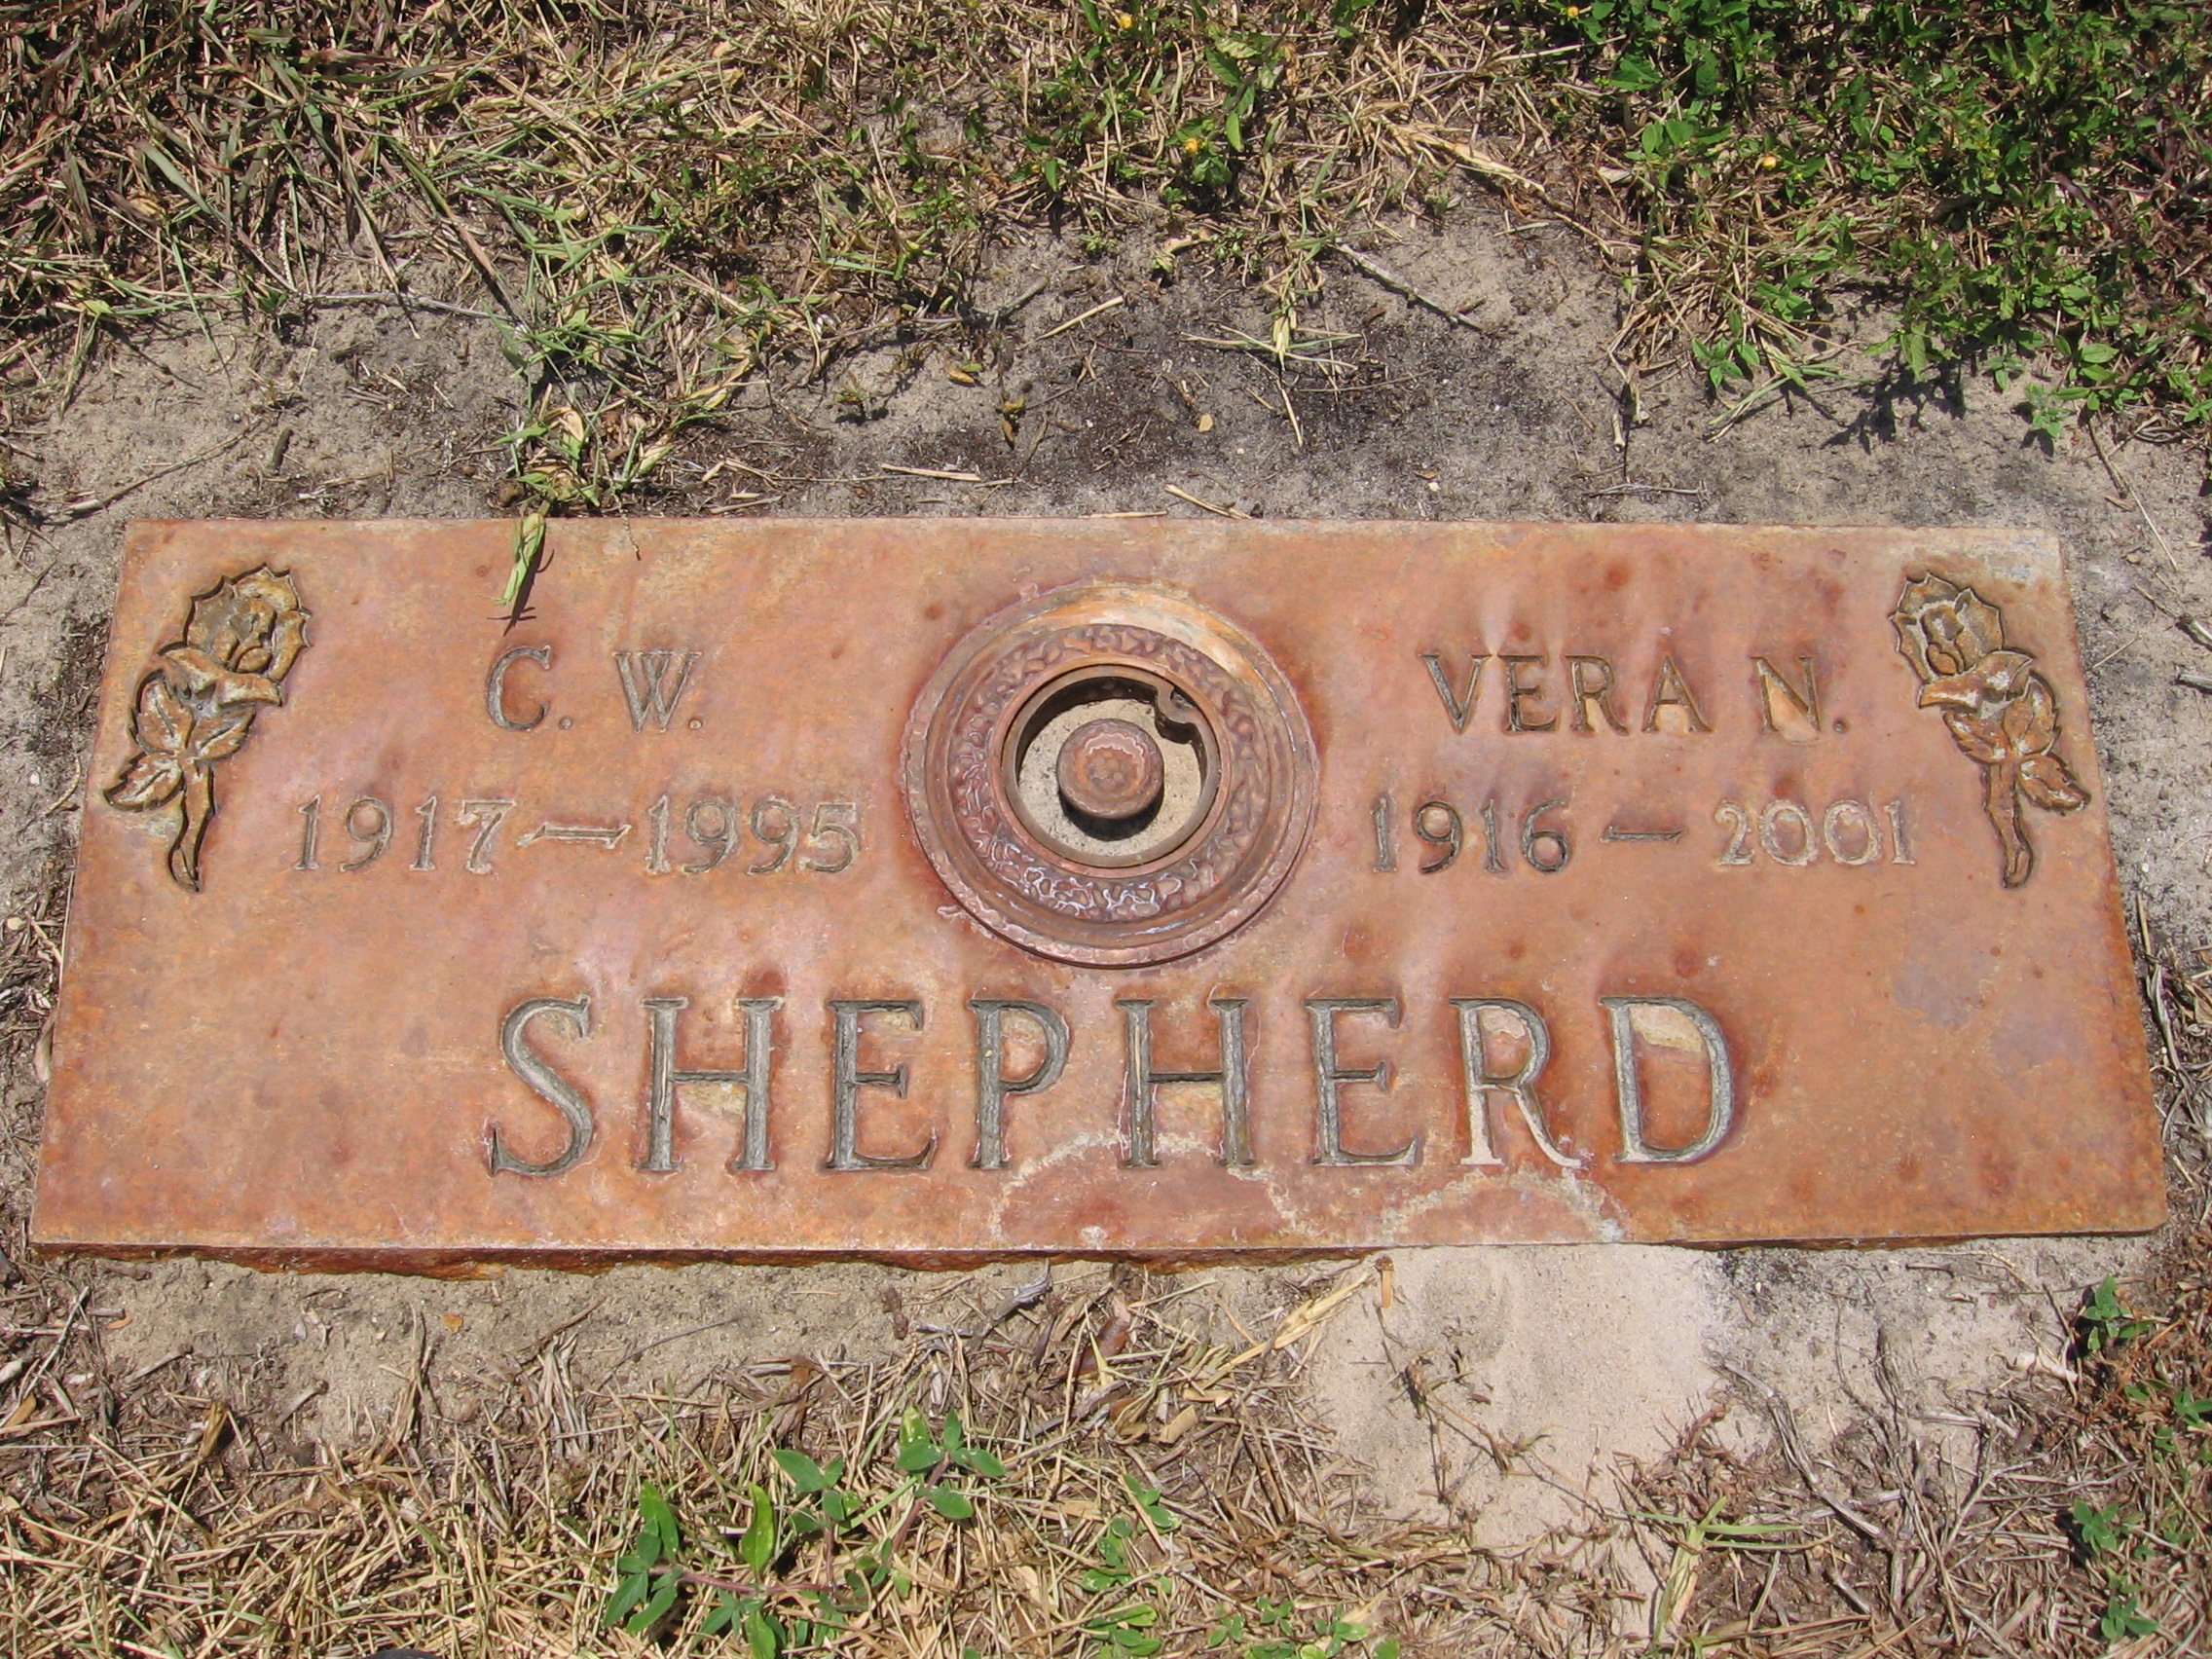 Vera N Shepherd